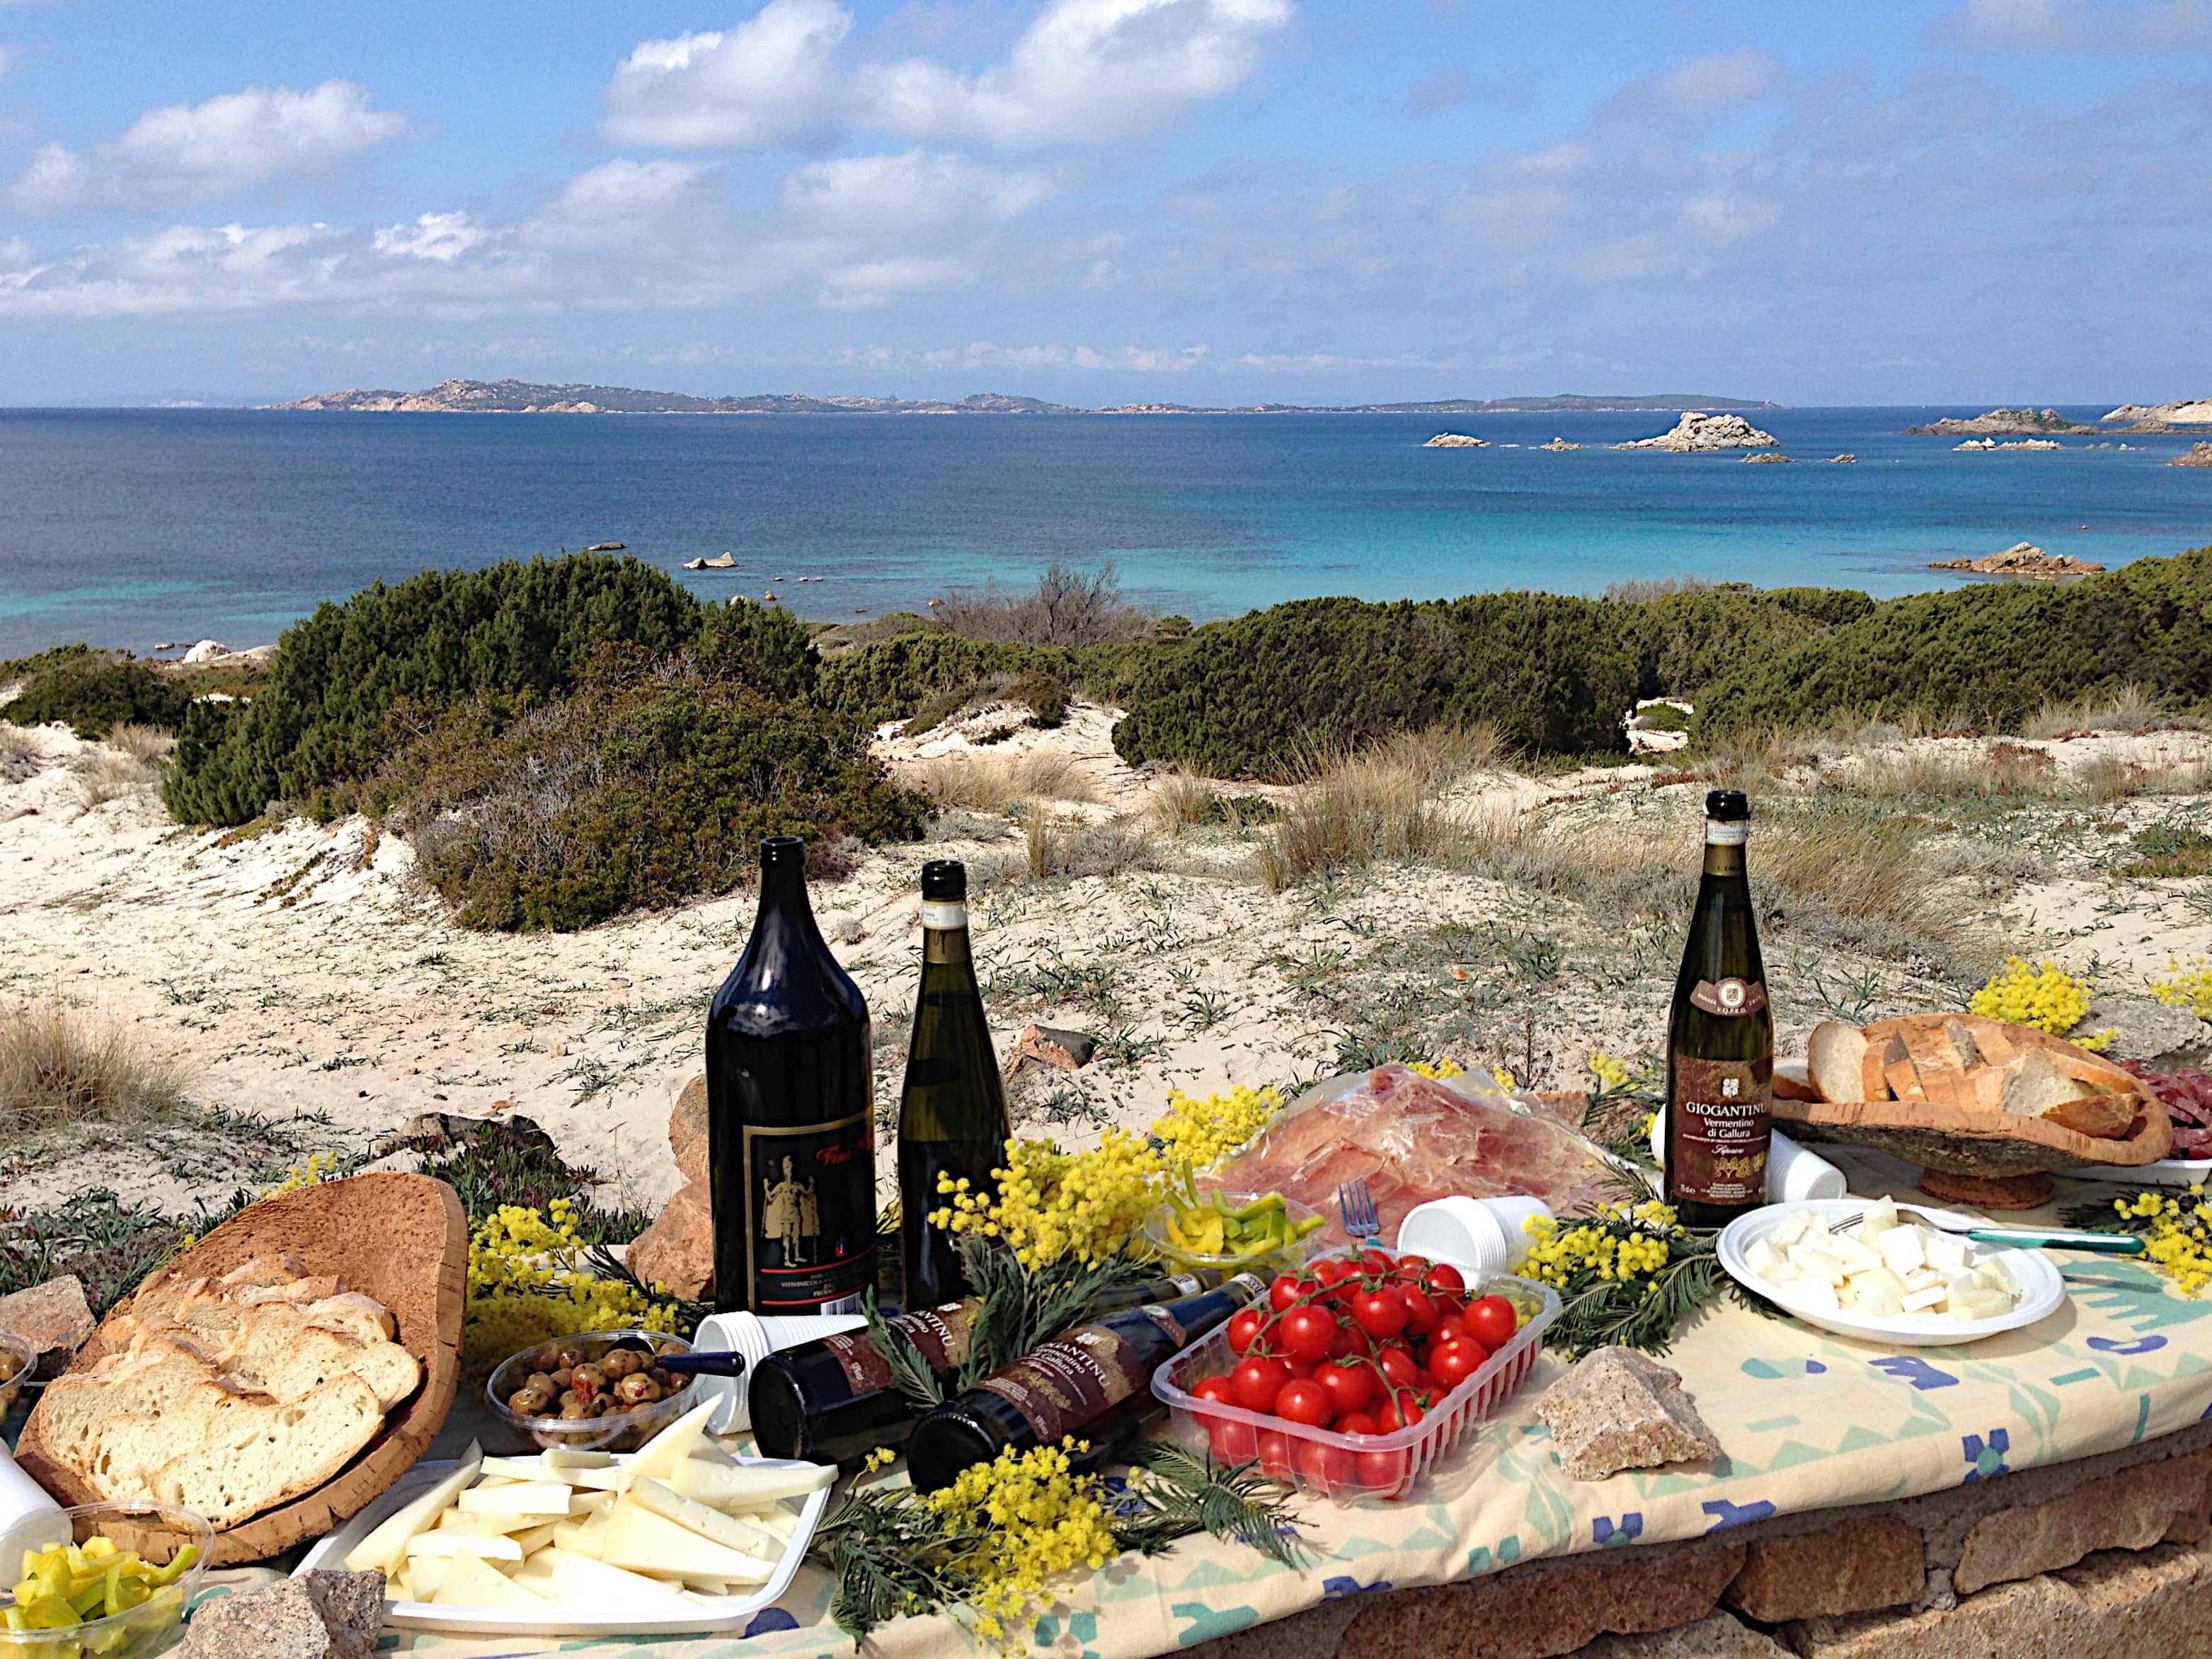 Picknick auf Sardinien